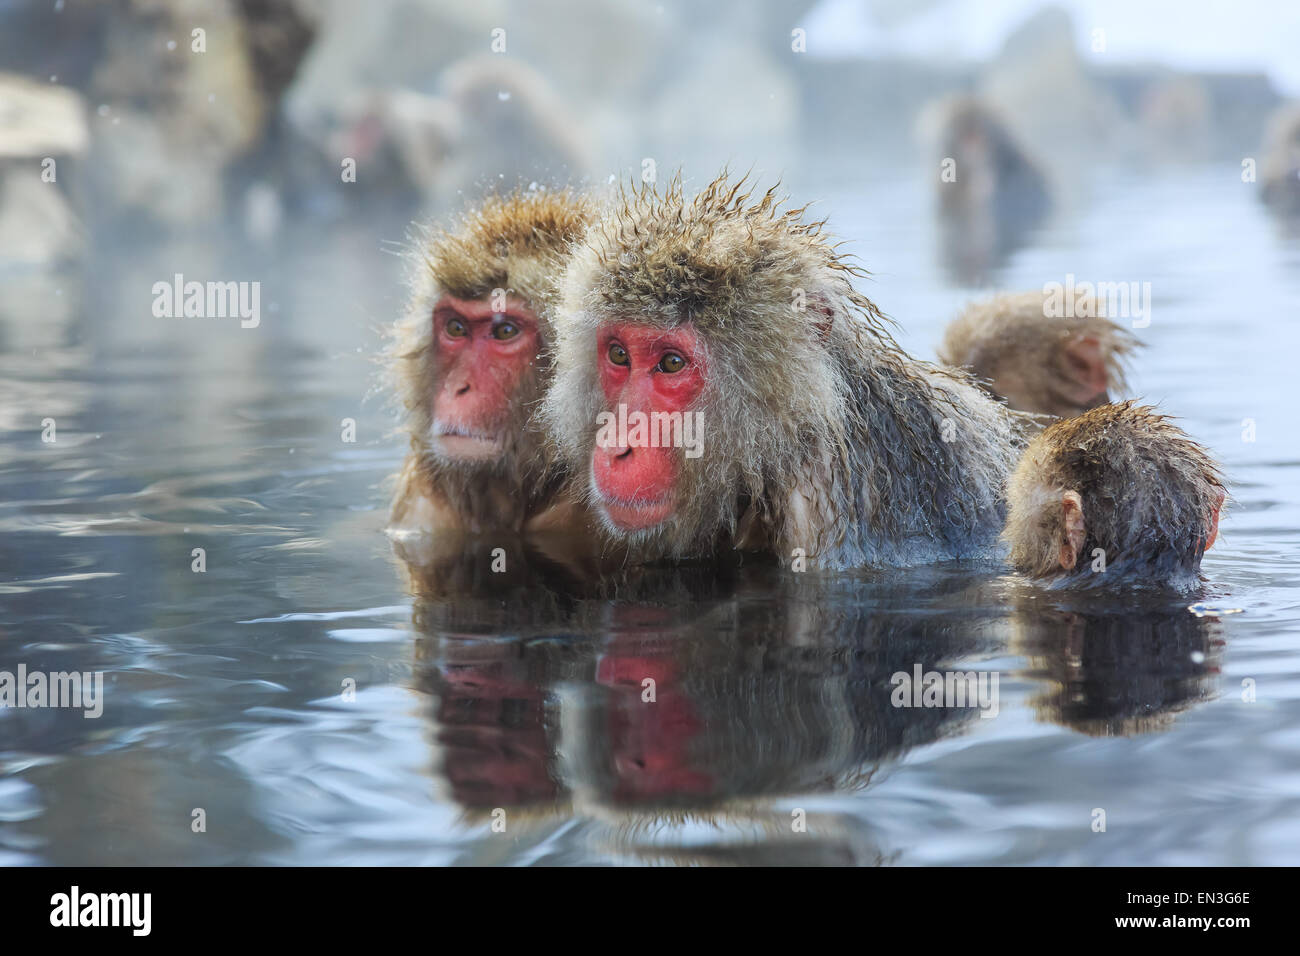 Les singes de la neige naturelle dans un onsen (source chaude), situé dans la région de Jigokudani Park, Yudanaka. Nagano au Japon. Banque D'Images